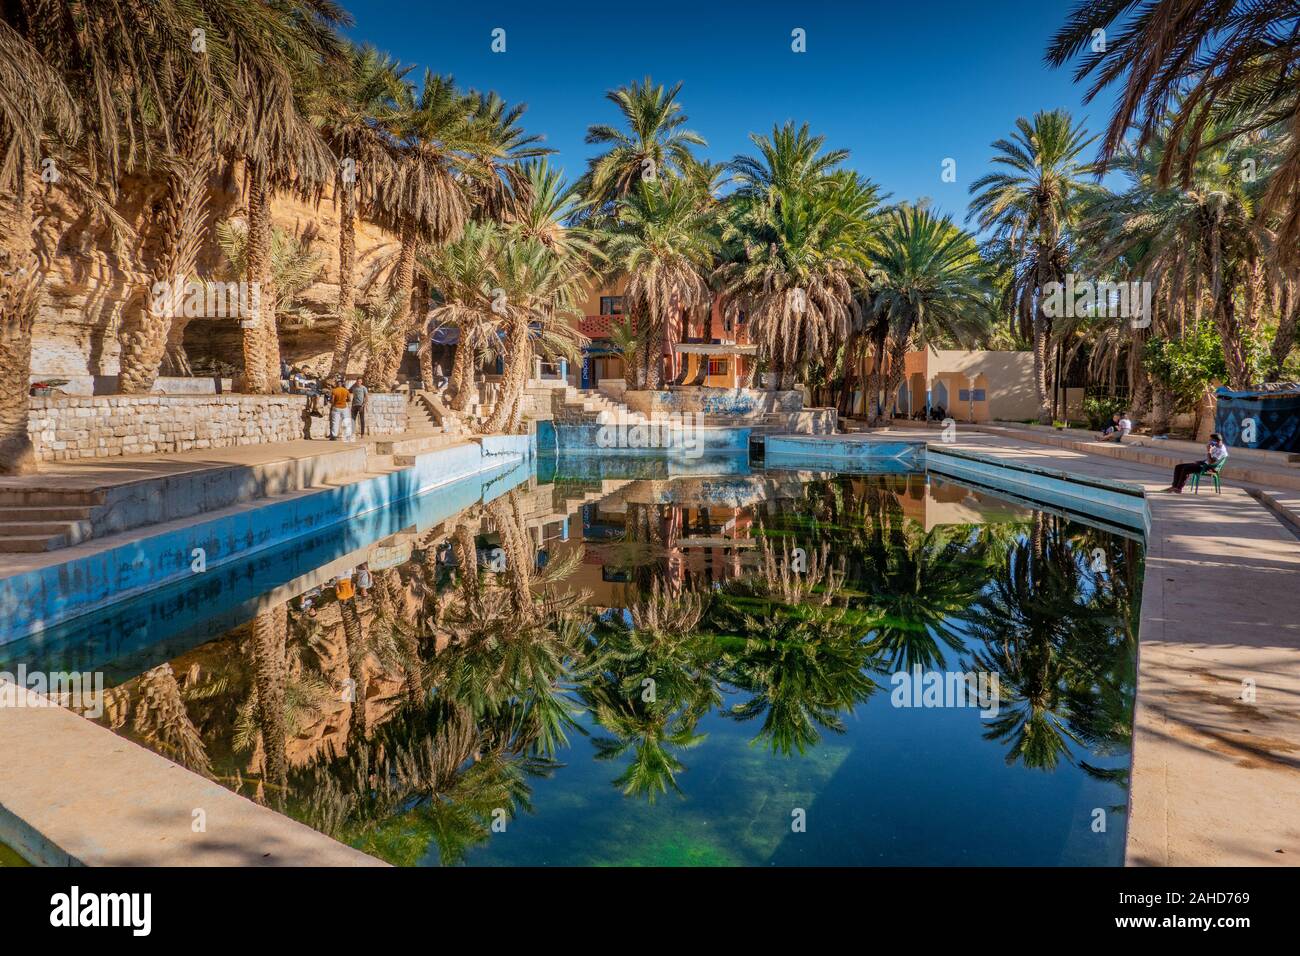 Le Maroc, la source bleue de Meski, 11-06-2019, l'oasis avec sa source naturelle est une excursion favorite place Banque D'Images